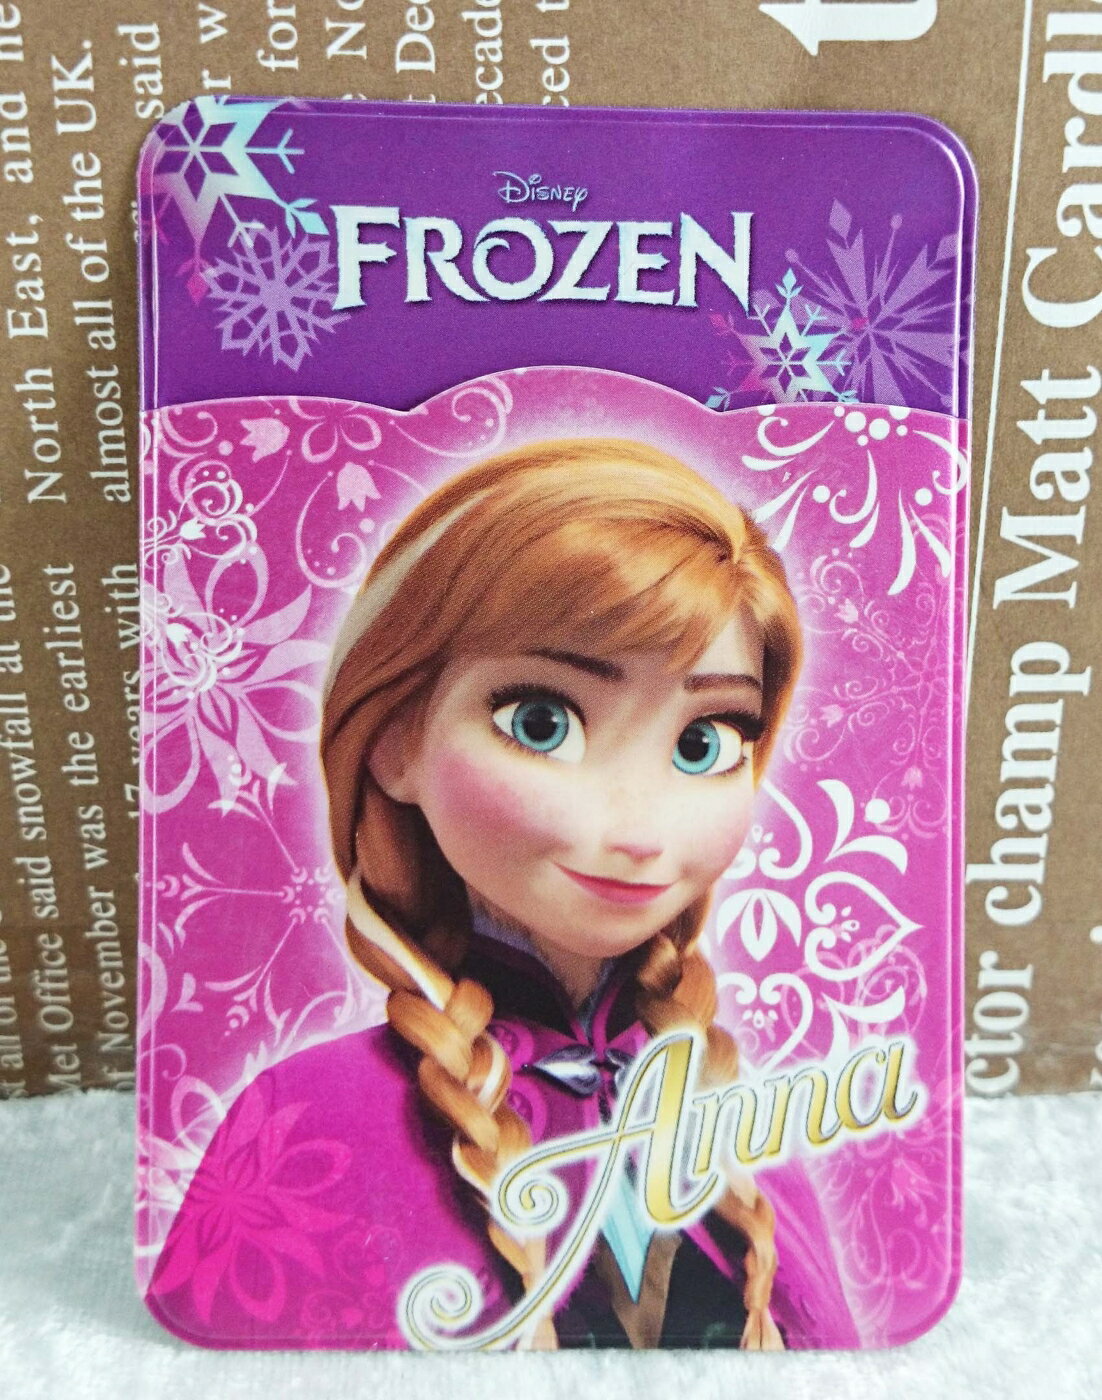 【震撼精品百貨】冰雪奇緣 Frozen 卡片收納 安娜 震撼日式精品百貨